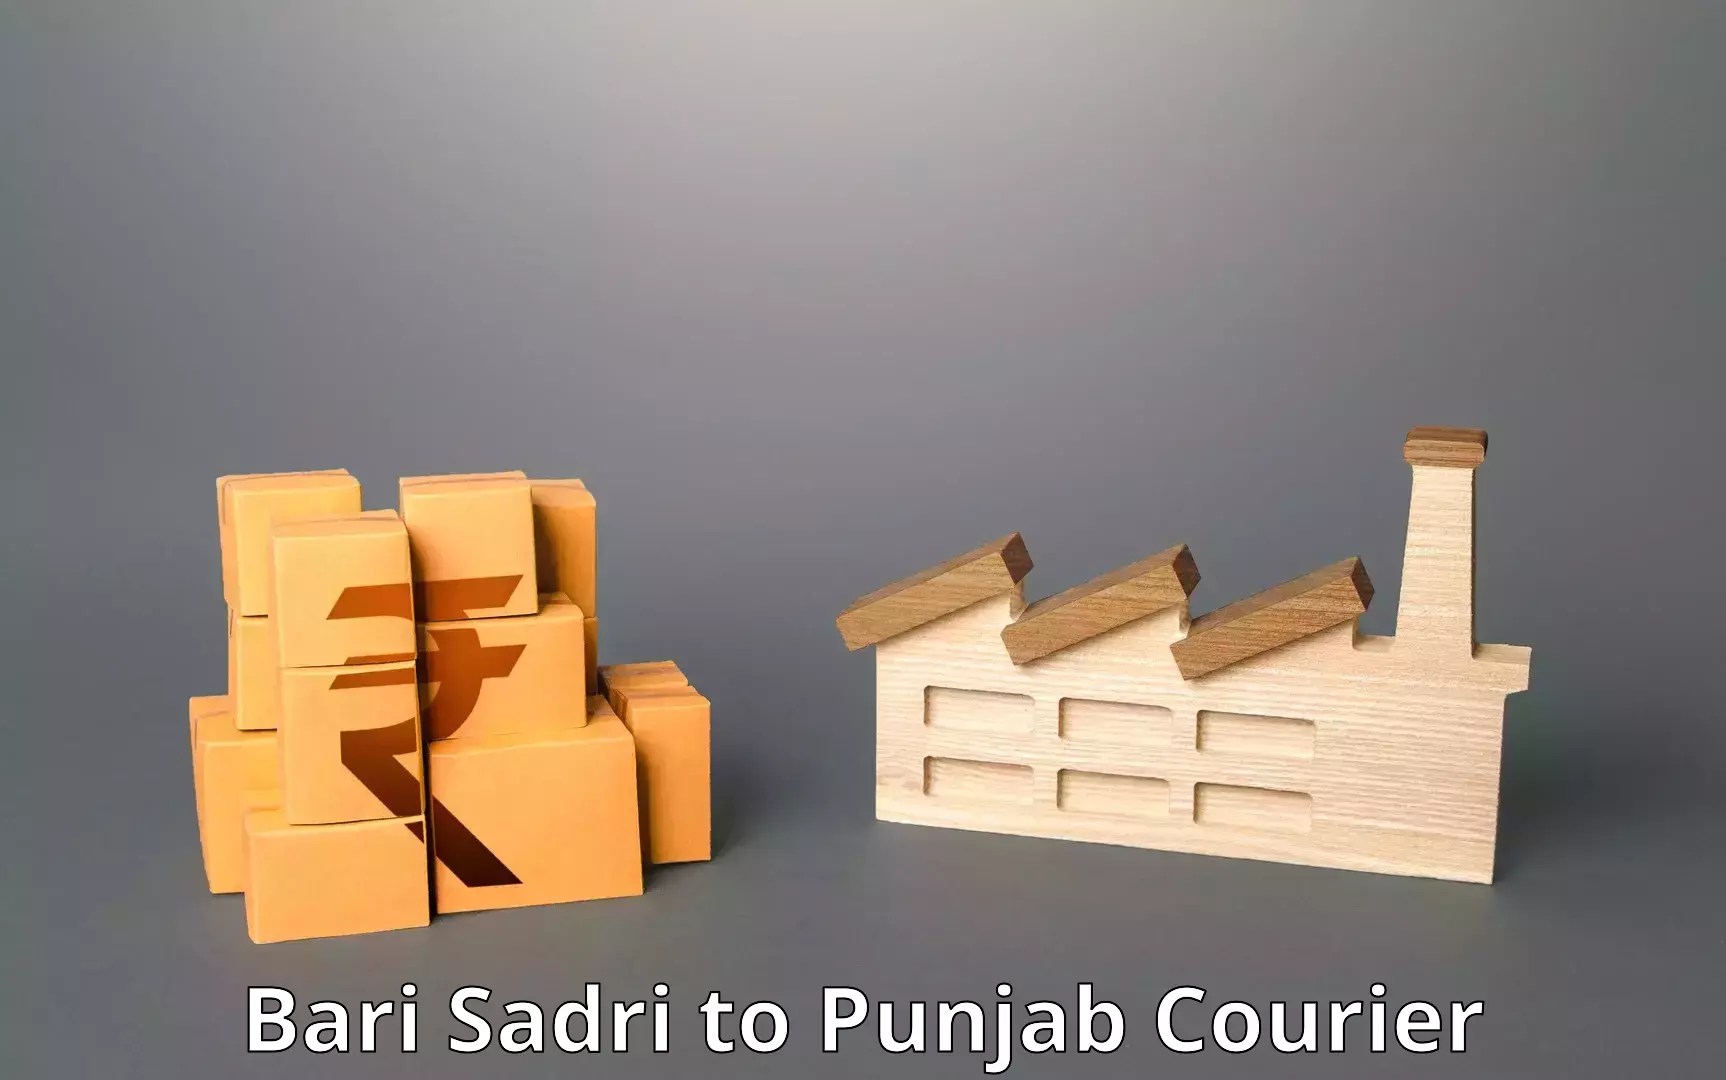 Digital courier platforms Bari Sadri to Punjab